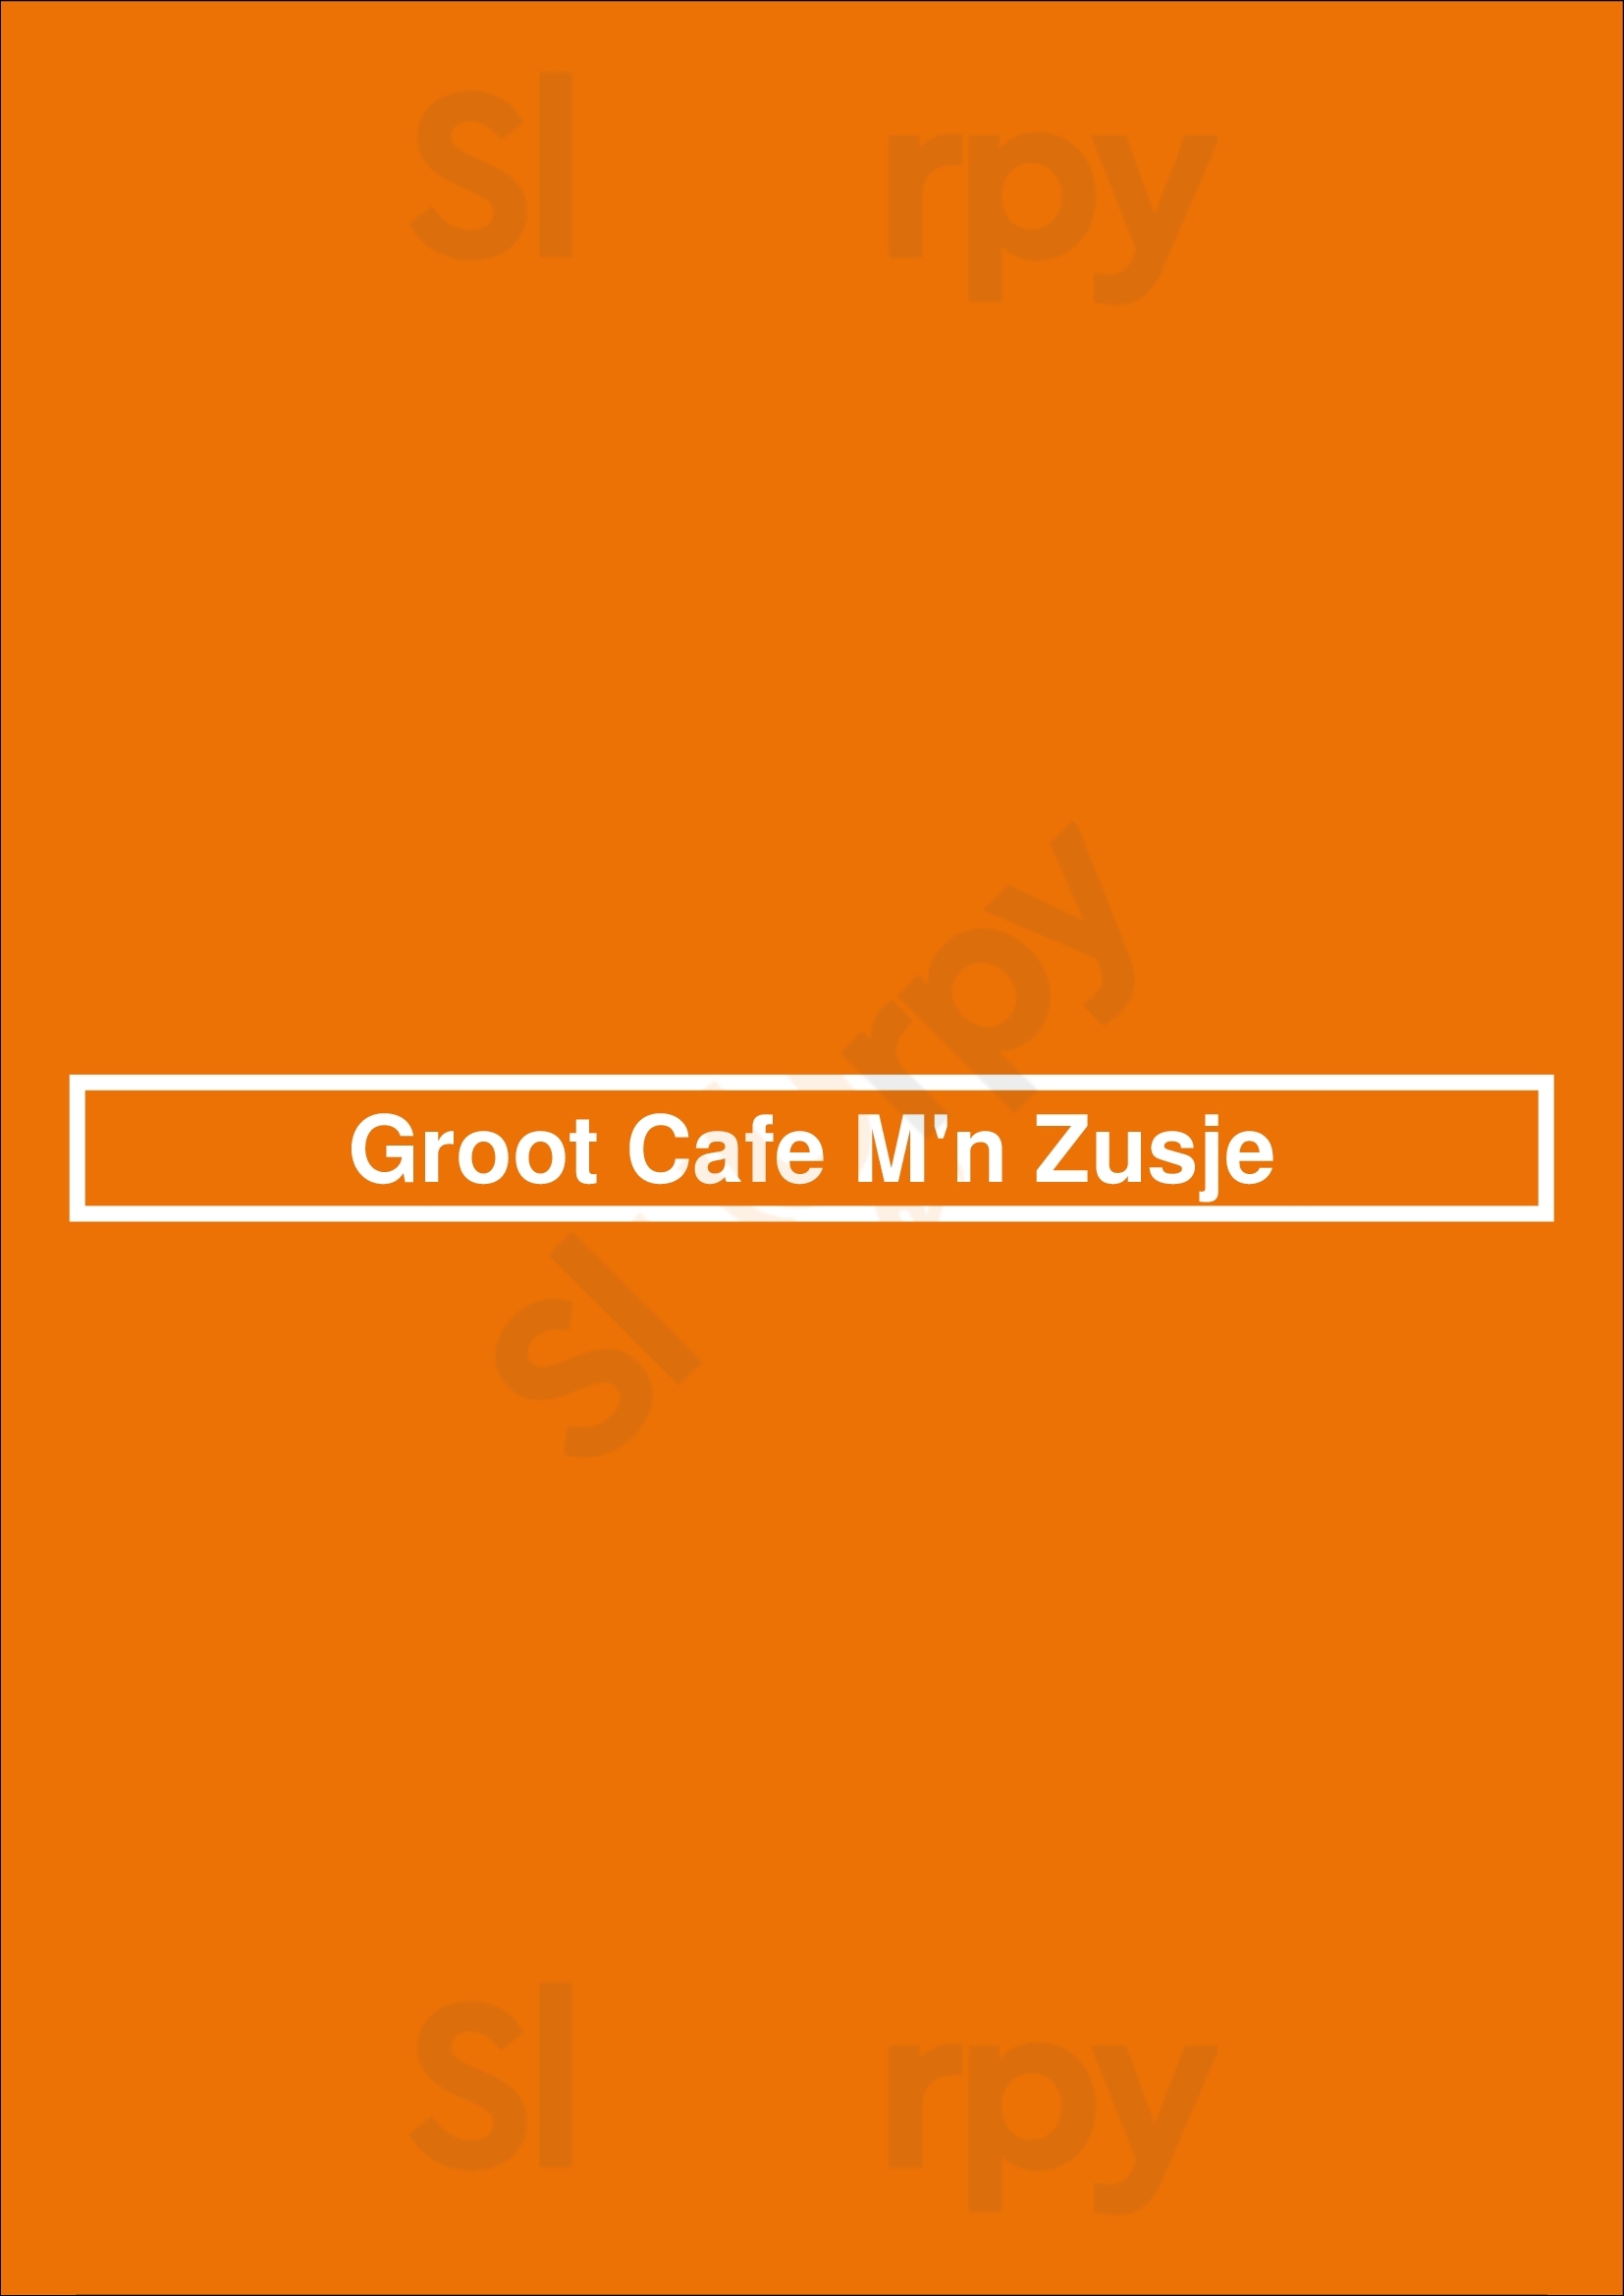 Groot Cafe M'n Zusje Drachten Menu - 1